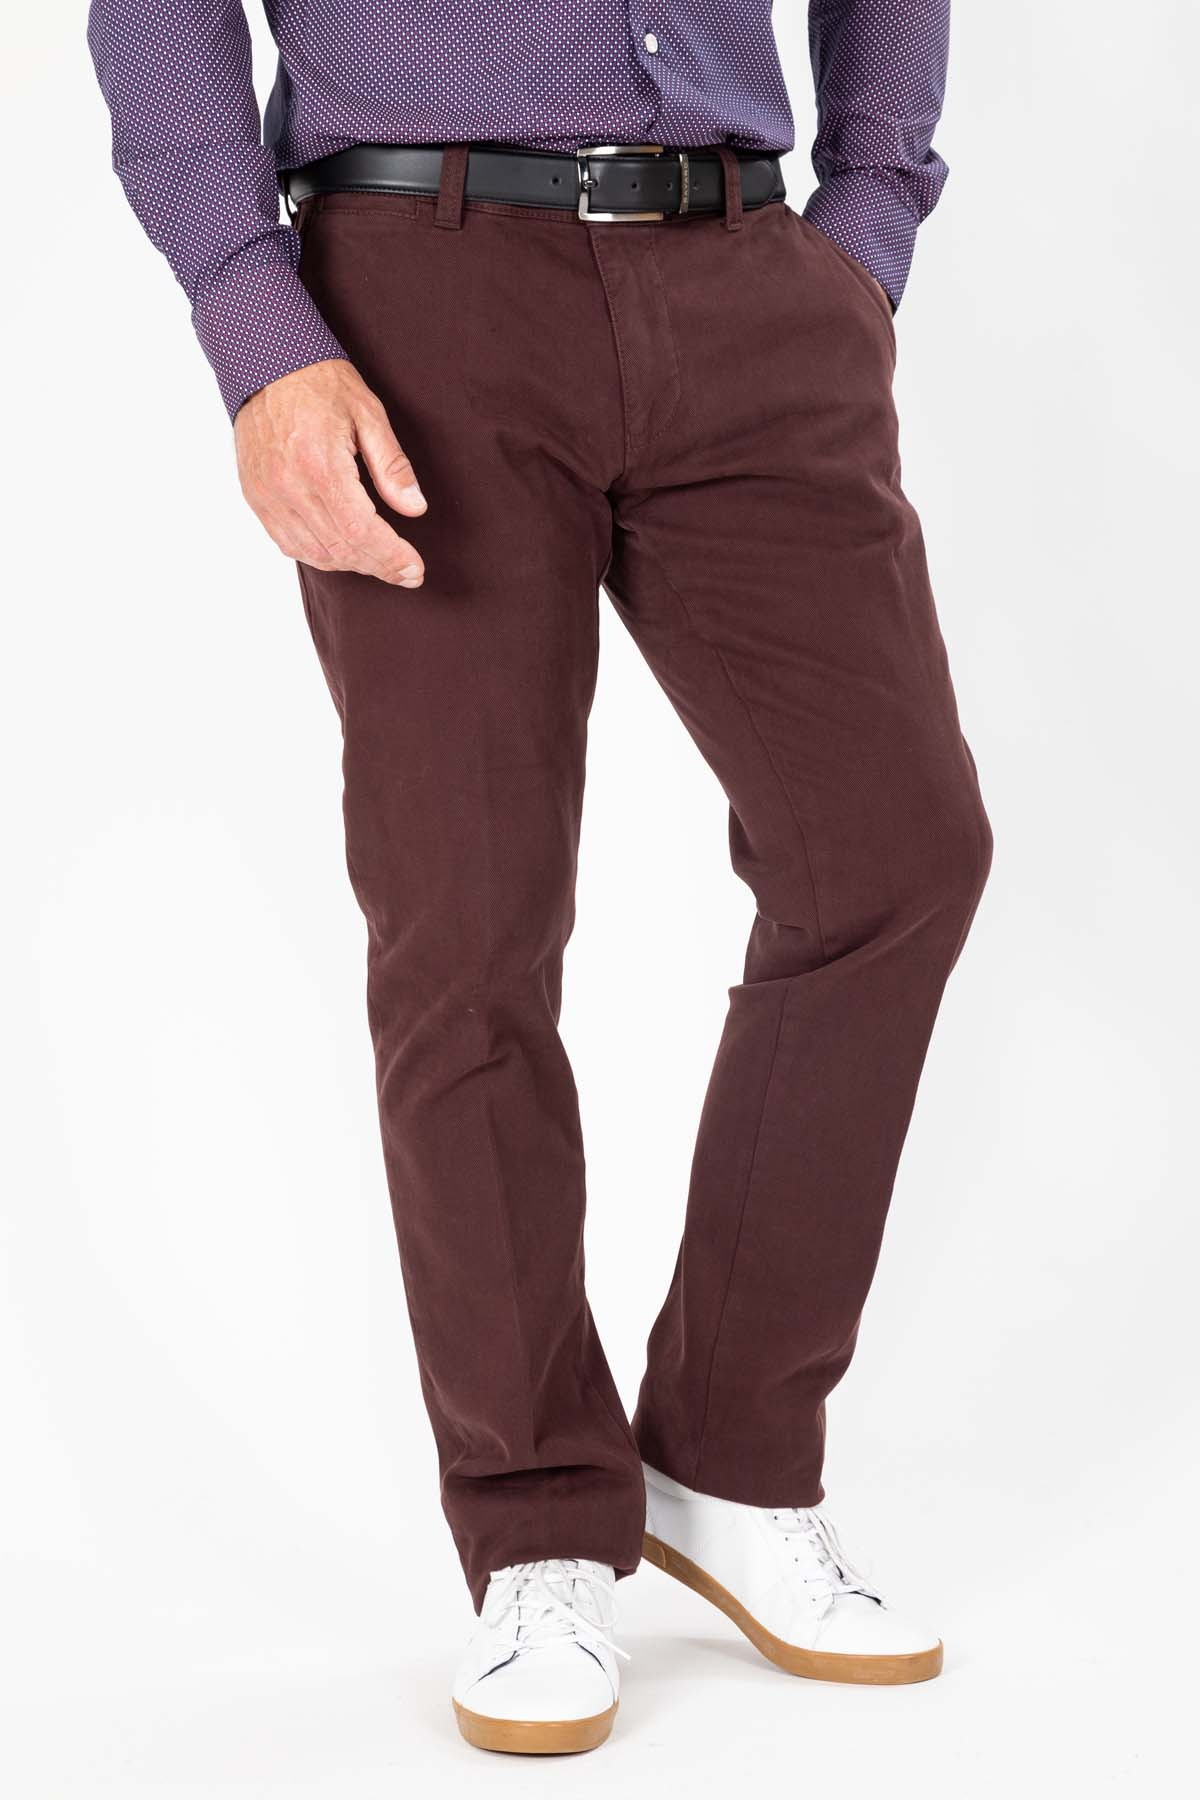 pantalon couleur prune en coton et elasthane